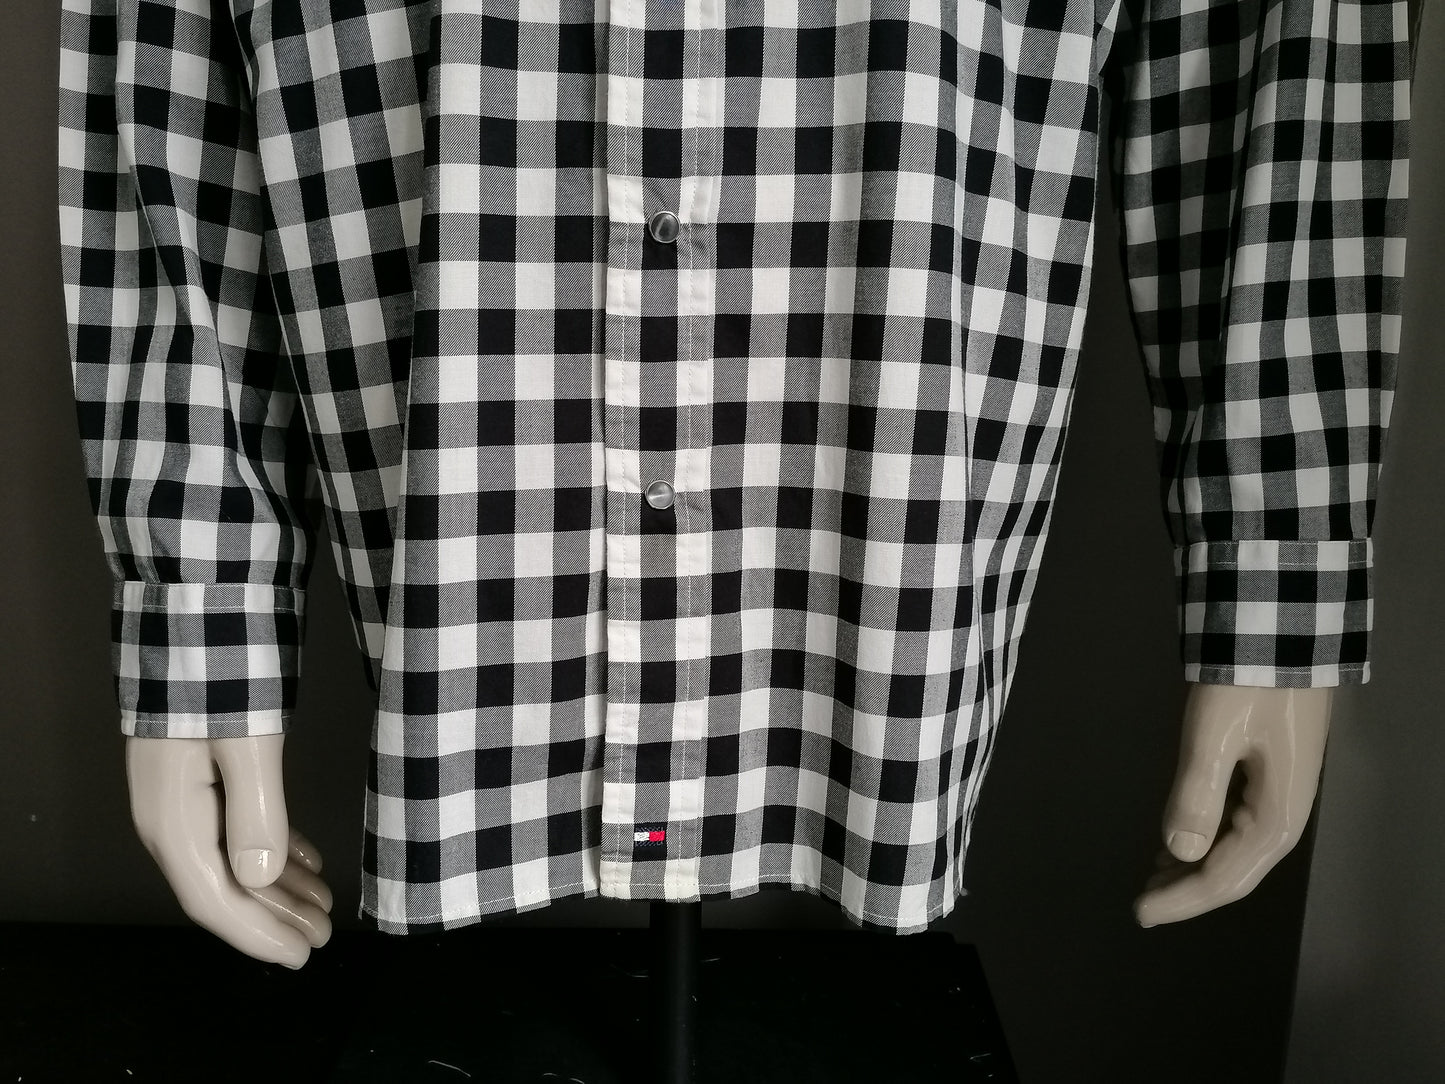 Tommy Hilfiger overhemd met drukknopen. Zwart Wit geblokt. Maat XL.